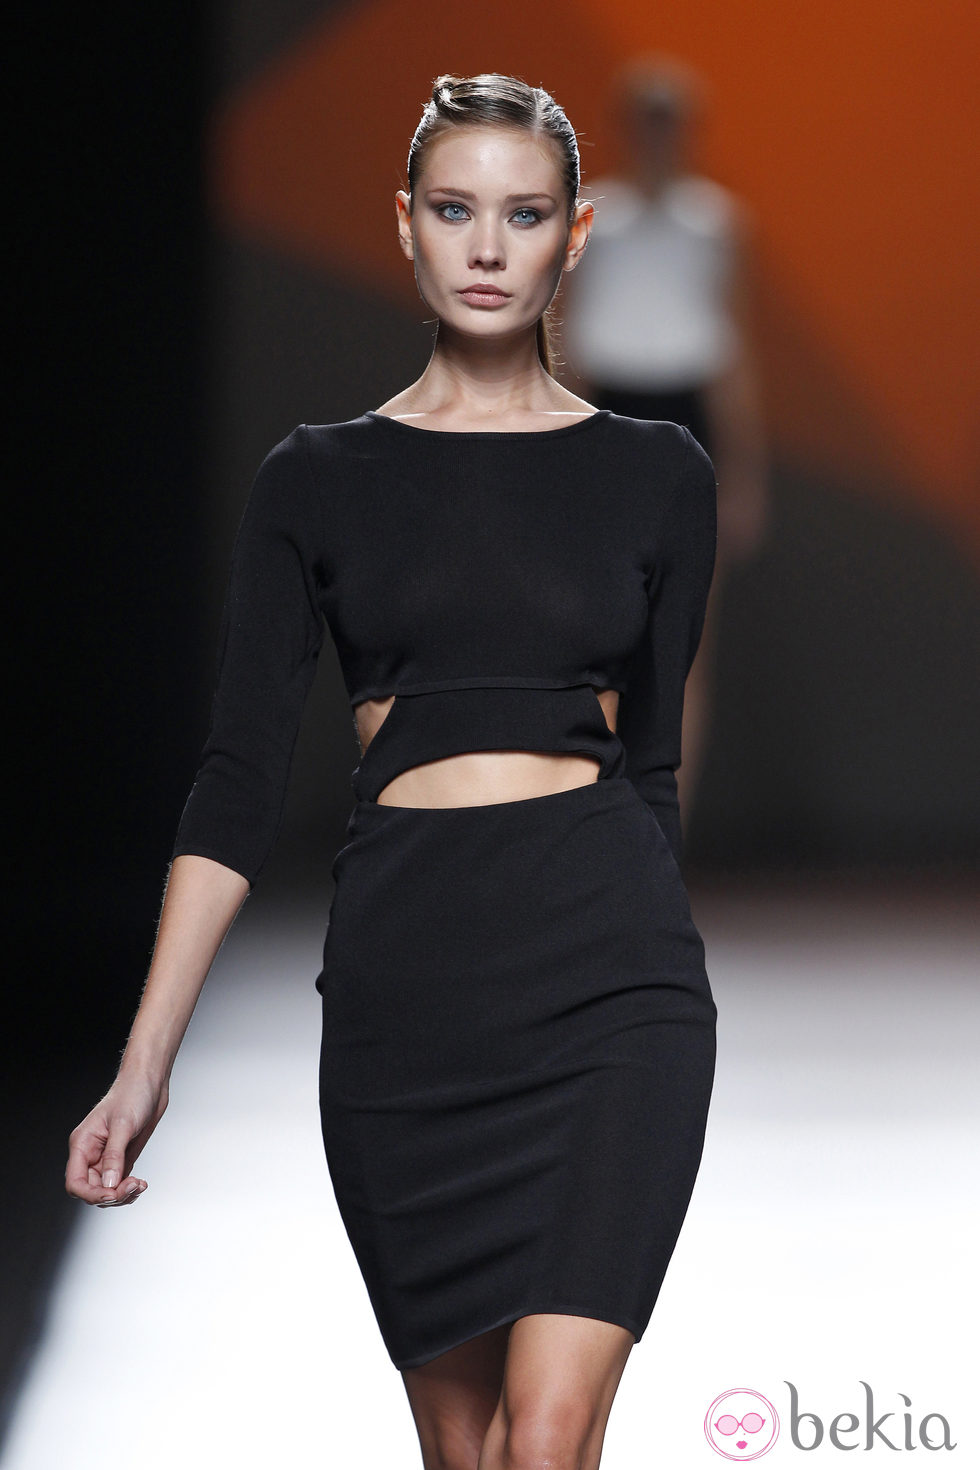 Vestido negro de la colección primavera/verano 2014 de AA de Amaya Arzuaga en Madrid Fahion Week